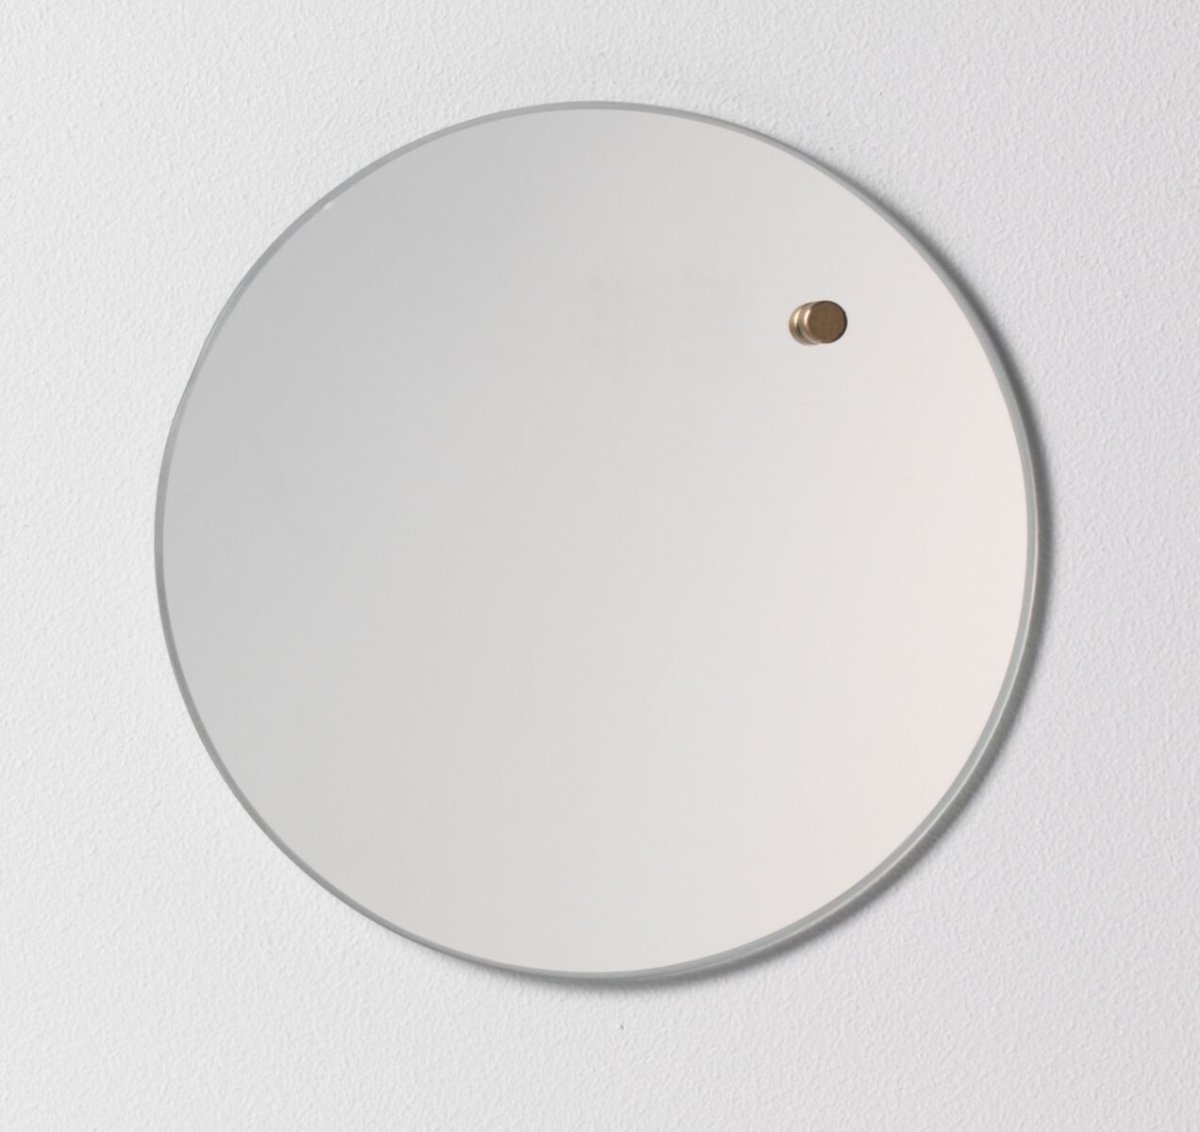 NAGA nord magnetisk opslagstavle, 25 cm, spejl